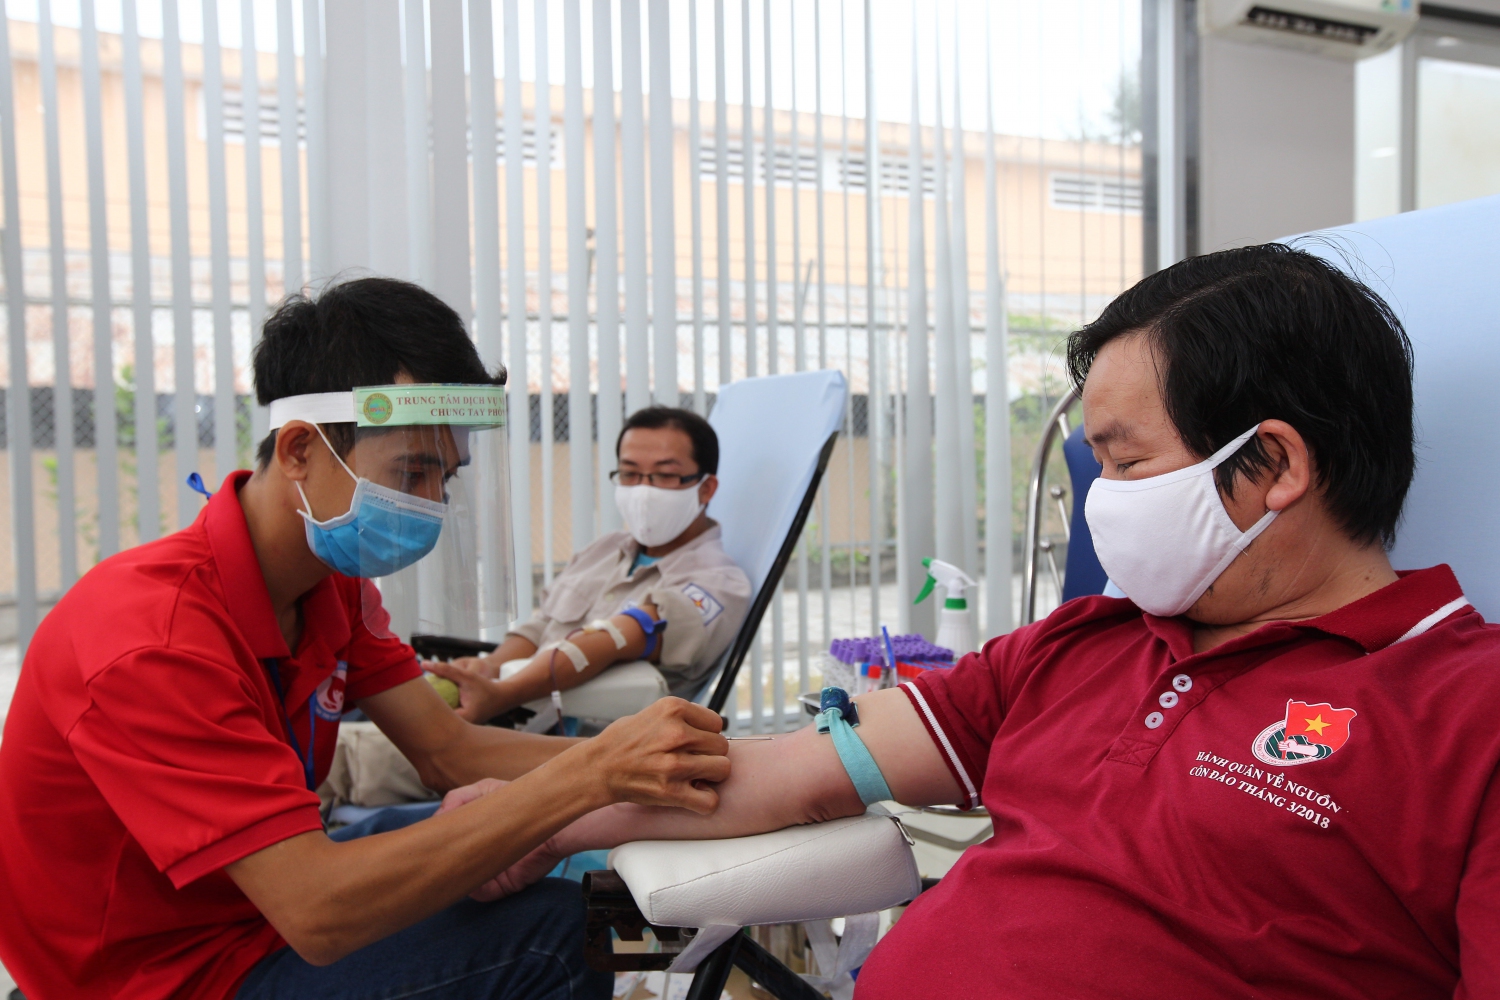 EVNGENCO 2 phát động hiến máu tình nguyện trong đại dịch COVID-19